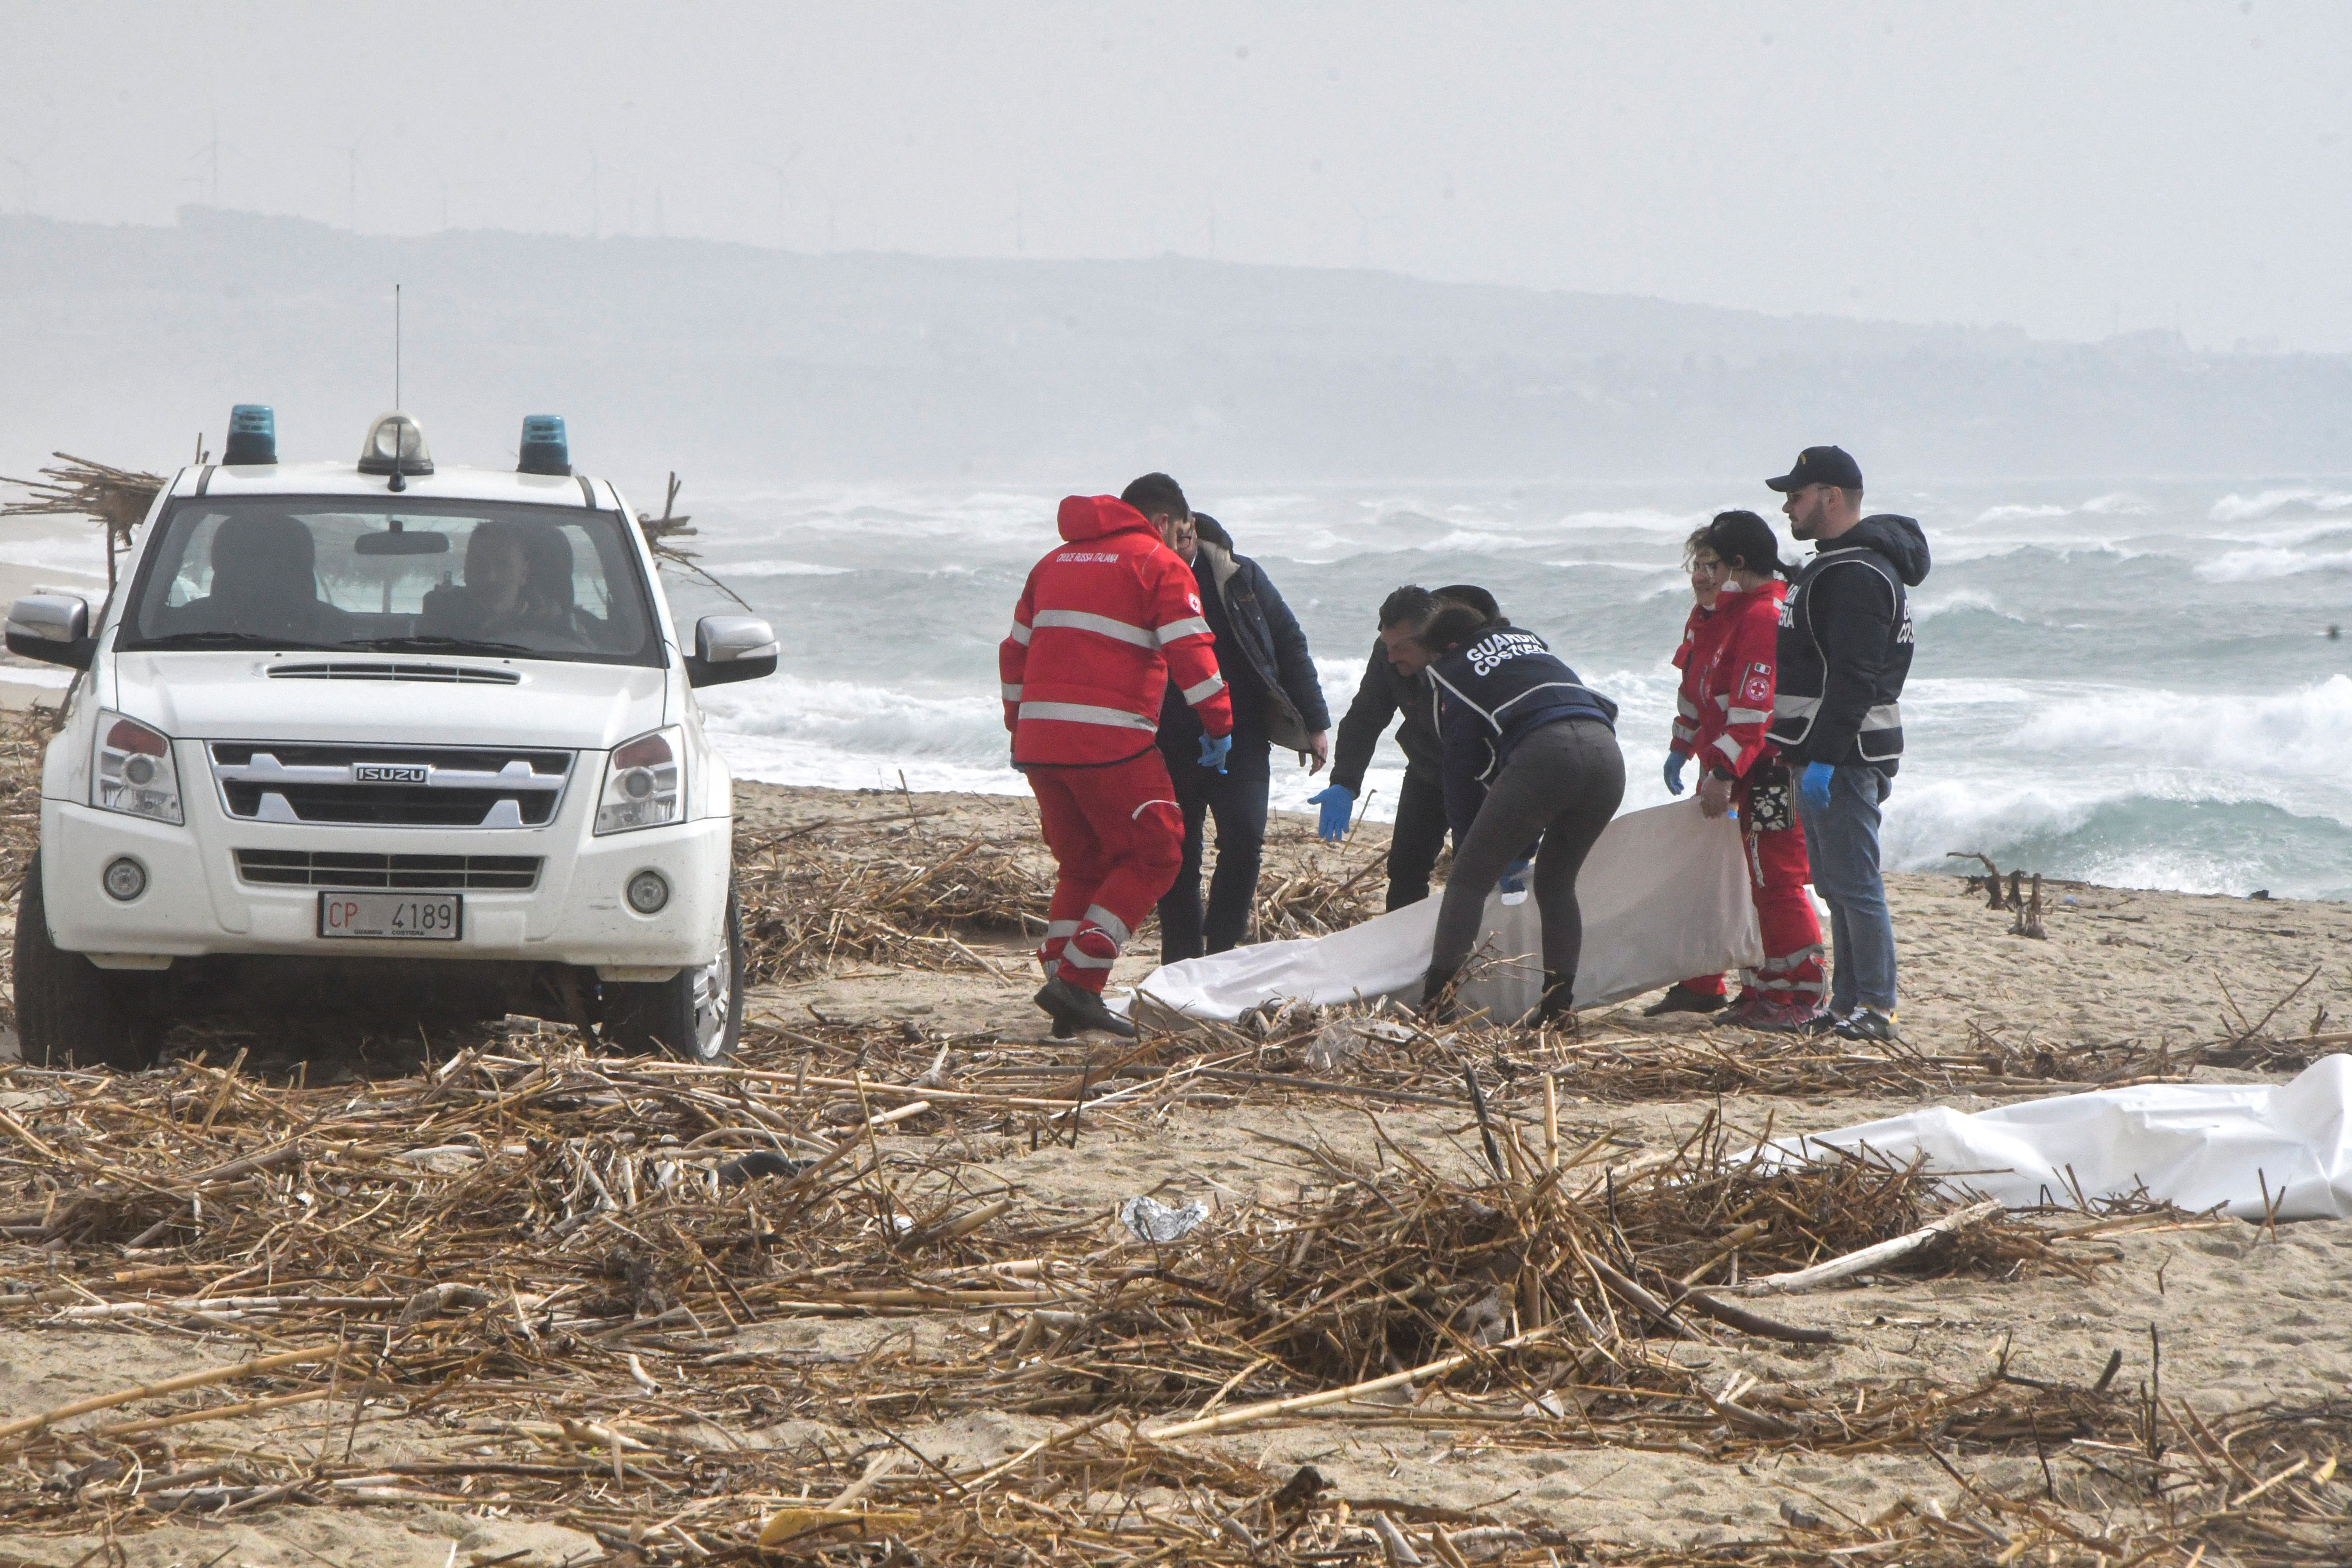 Bodies wash ashore in a suspected migrant shipwreck, in Cutro